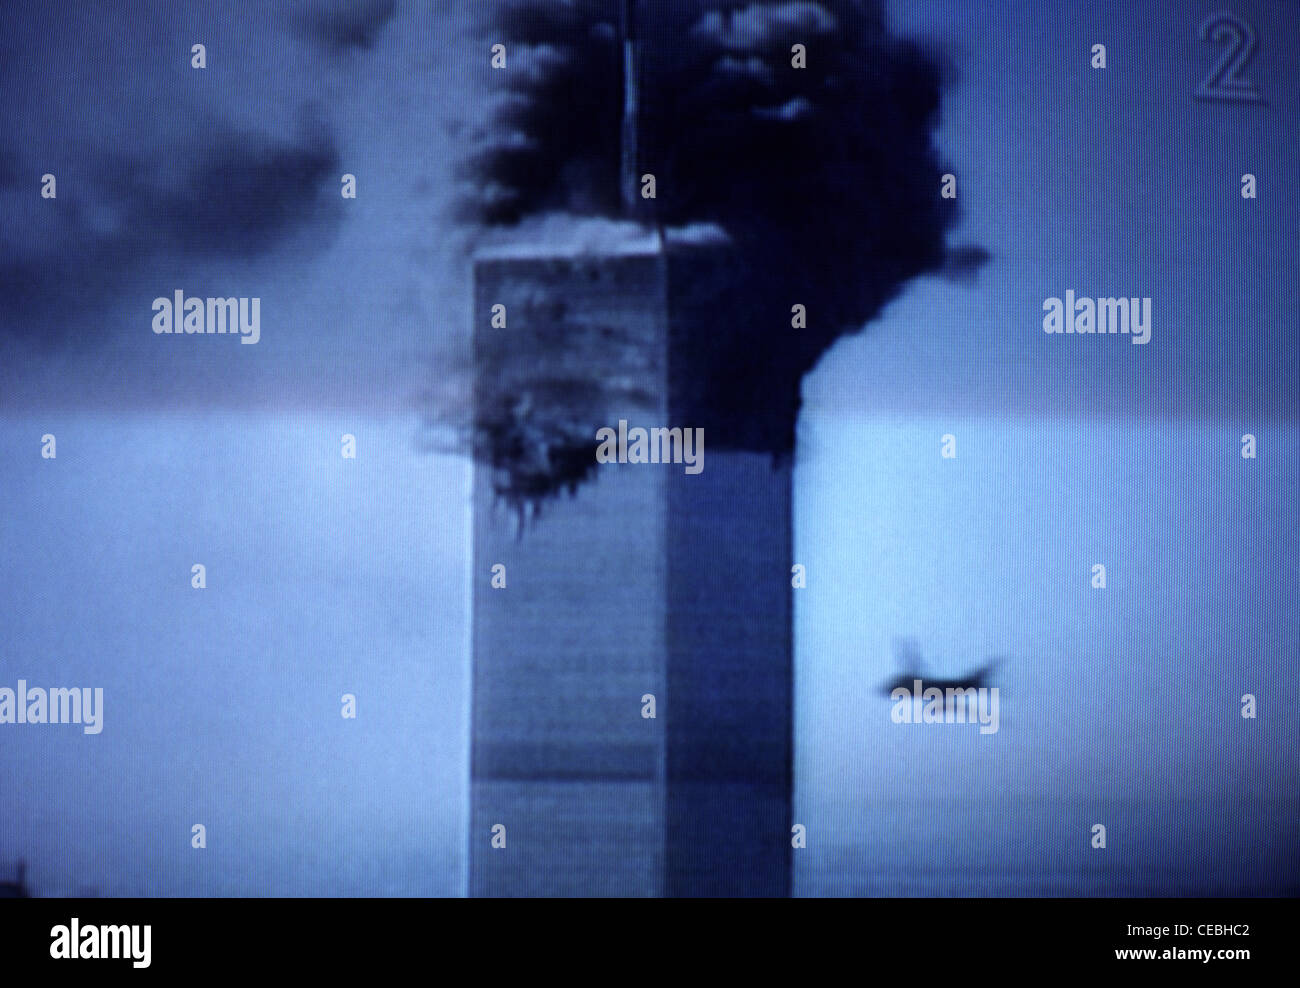 Uno screenshot della copertura in diretta della televisione degli eventi che si dispiegarono a New York nel corso del 9/11, in cui due aerei dirottati si schiantarono nelle torri gemelle il 11 settembre 2001. Foto Stock